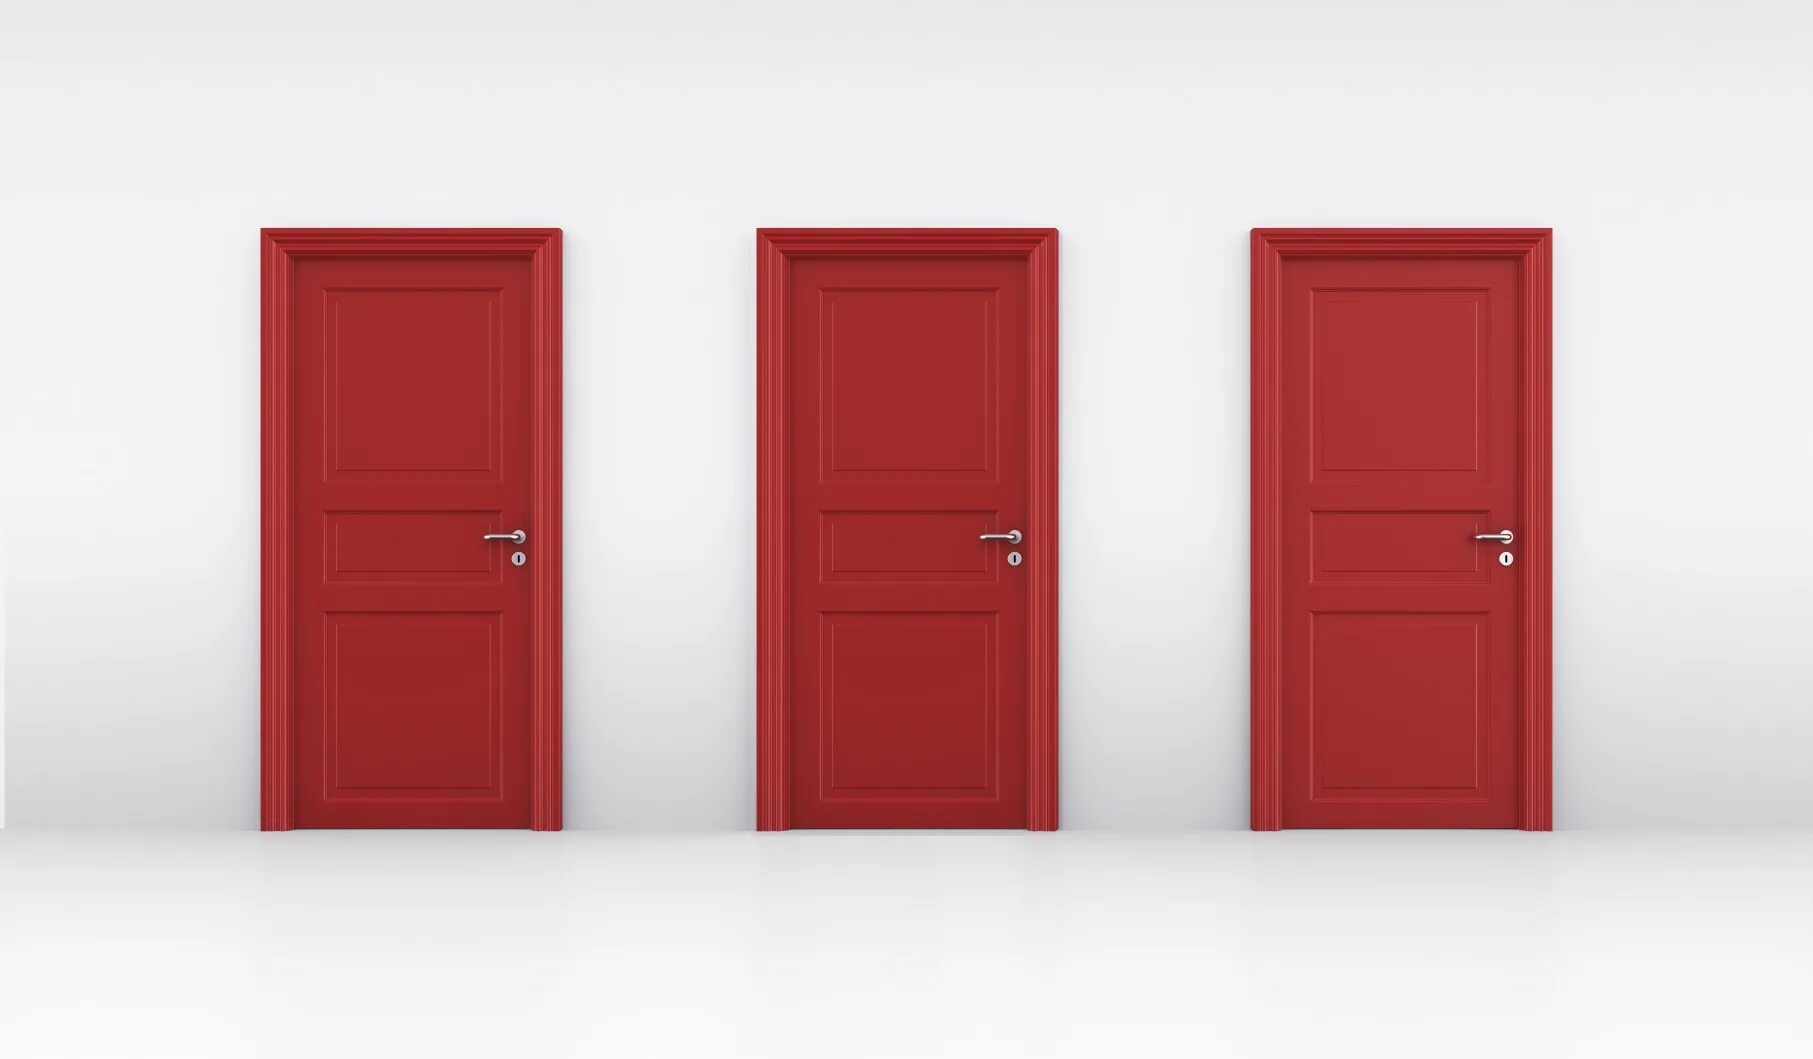 Видео 3 двери. Дверь 3.4.1 PD. 3 Двери. Красная дверь. Три двери выбор.